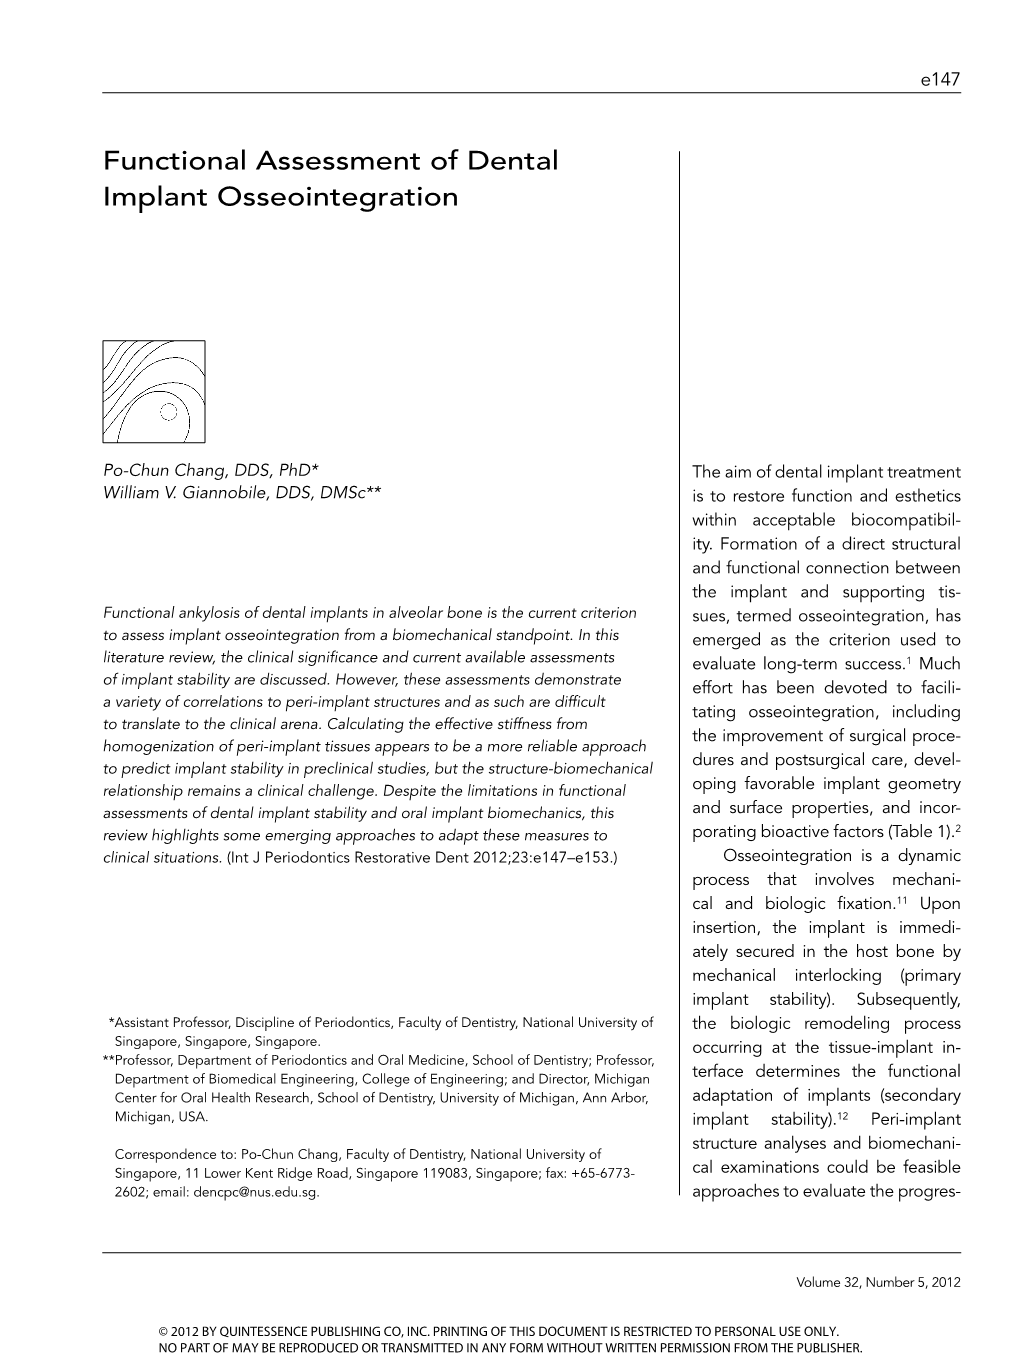 Functional Assessment of Dental Implant Osseointegration